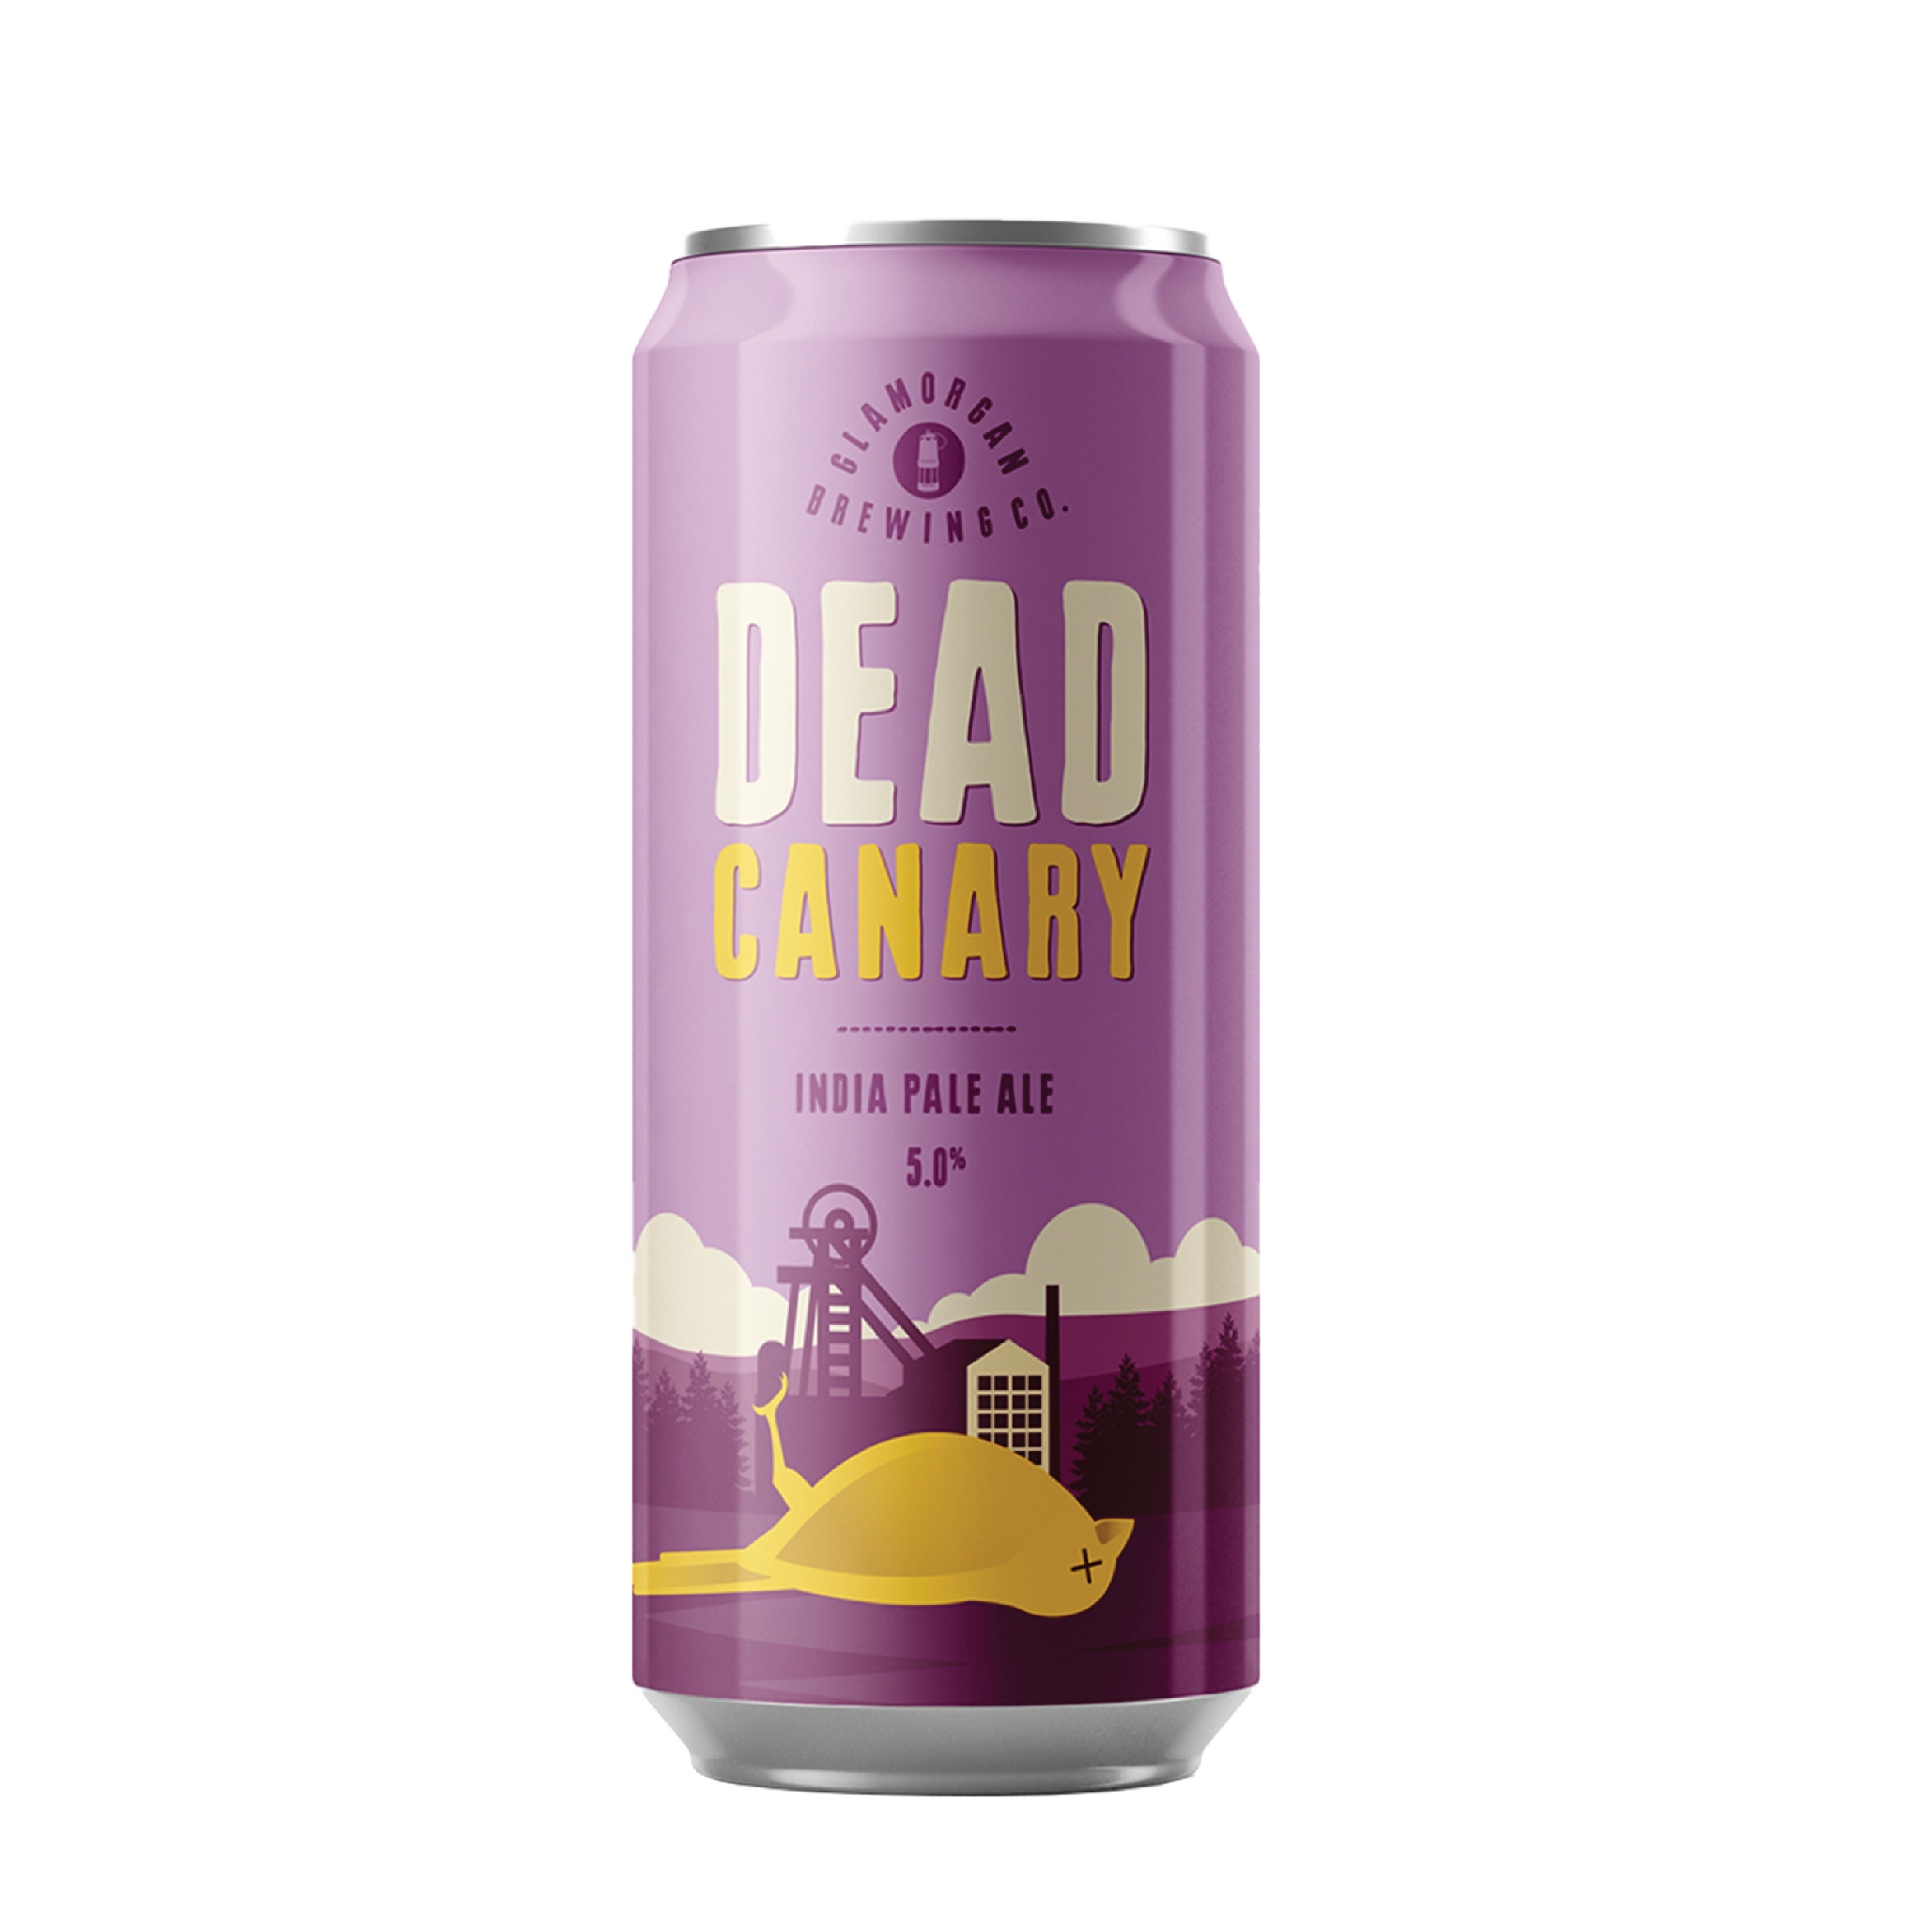 DEAD CANARY IPA